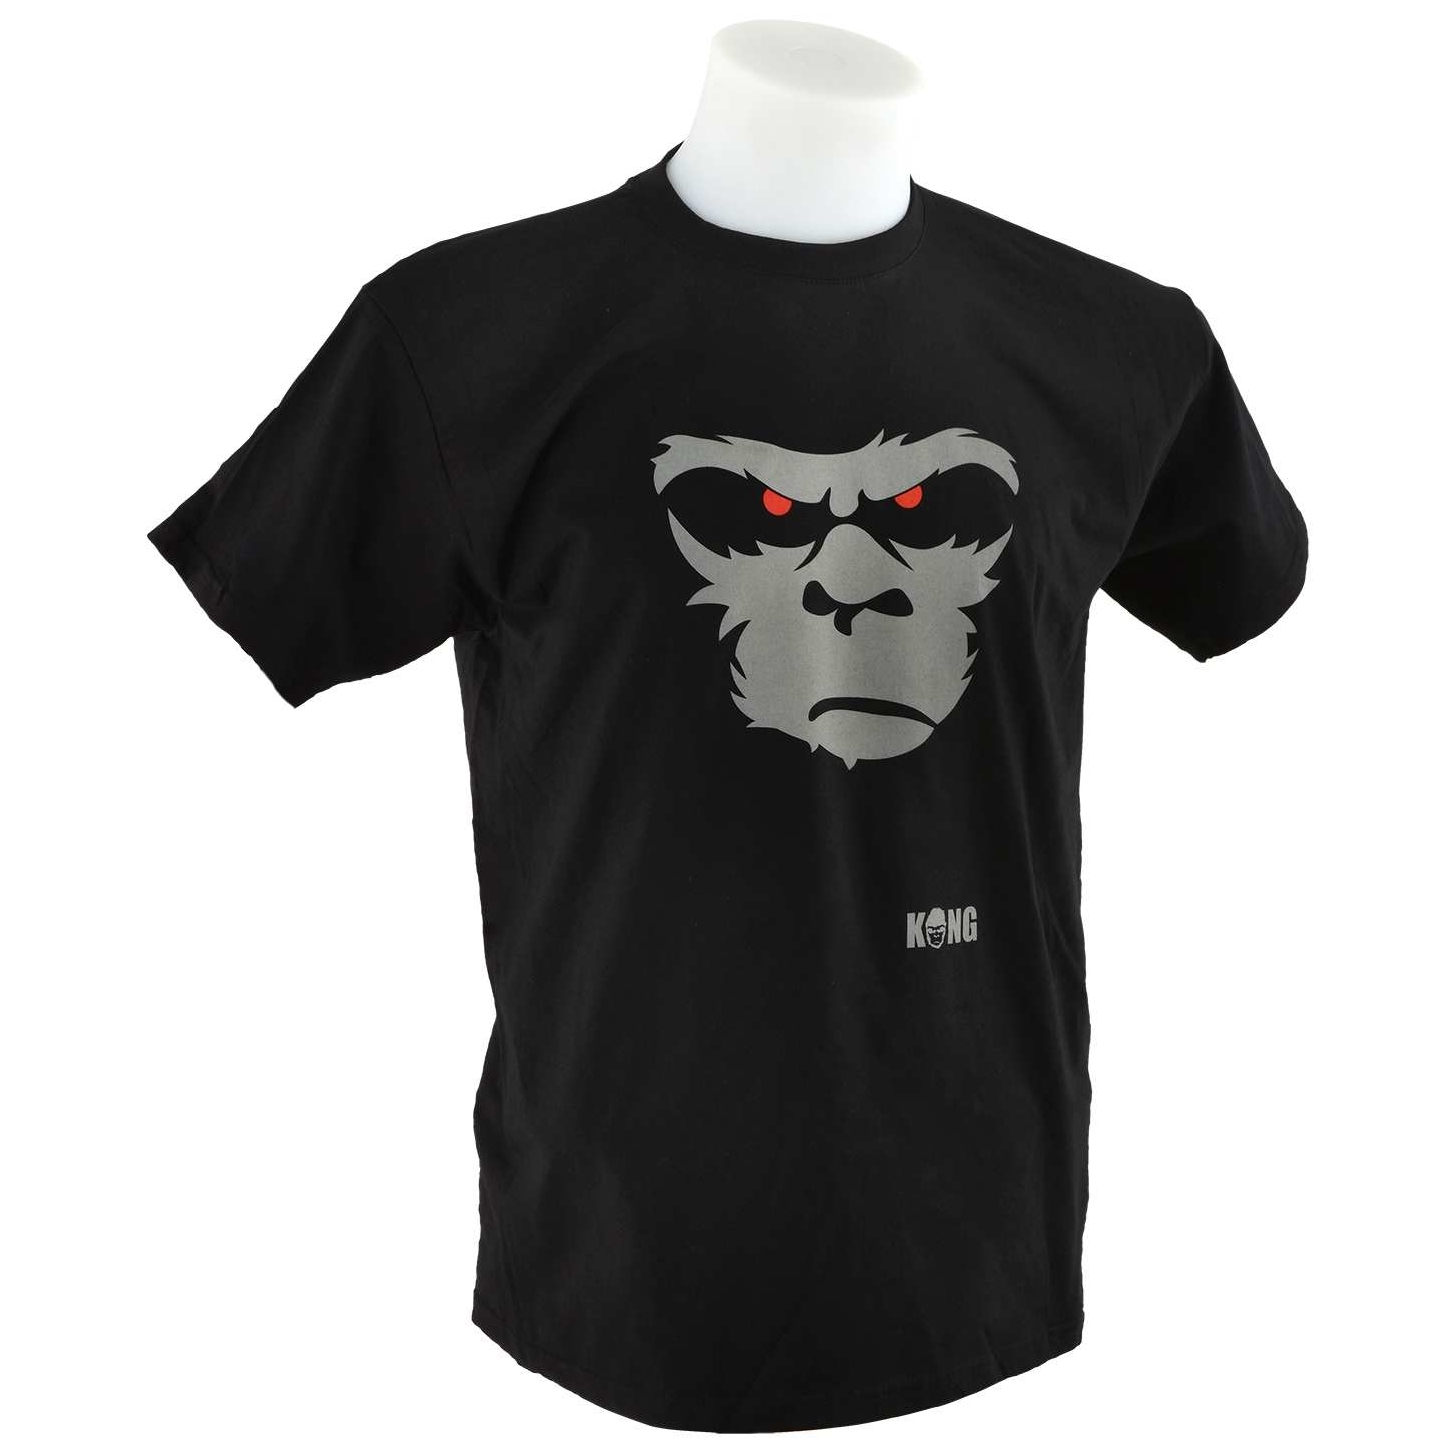 Kong Shirt BLK - XL